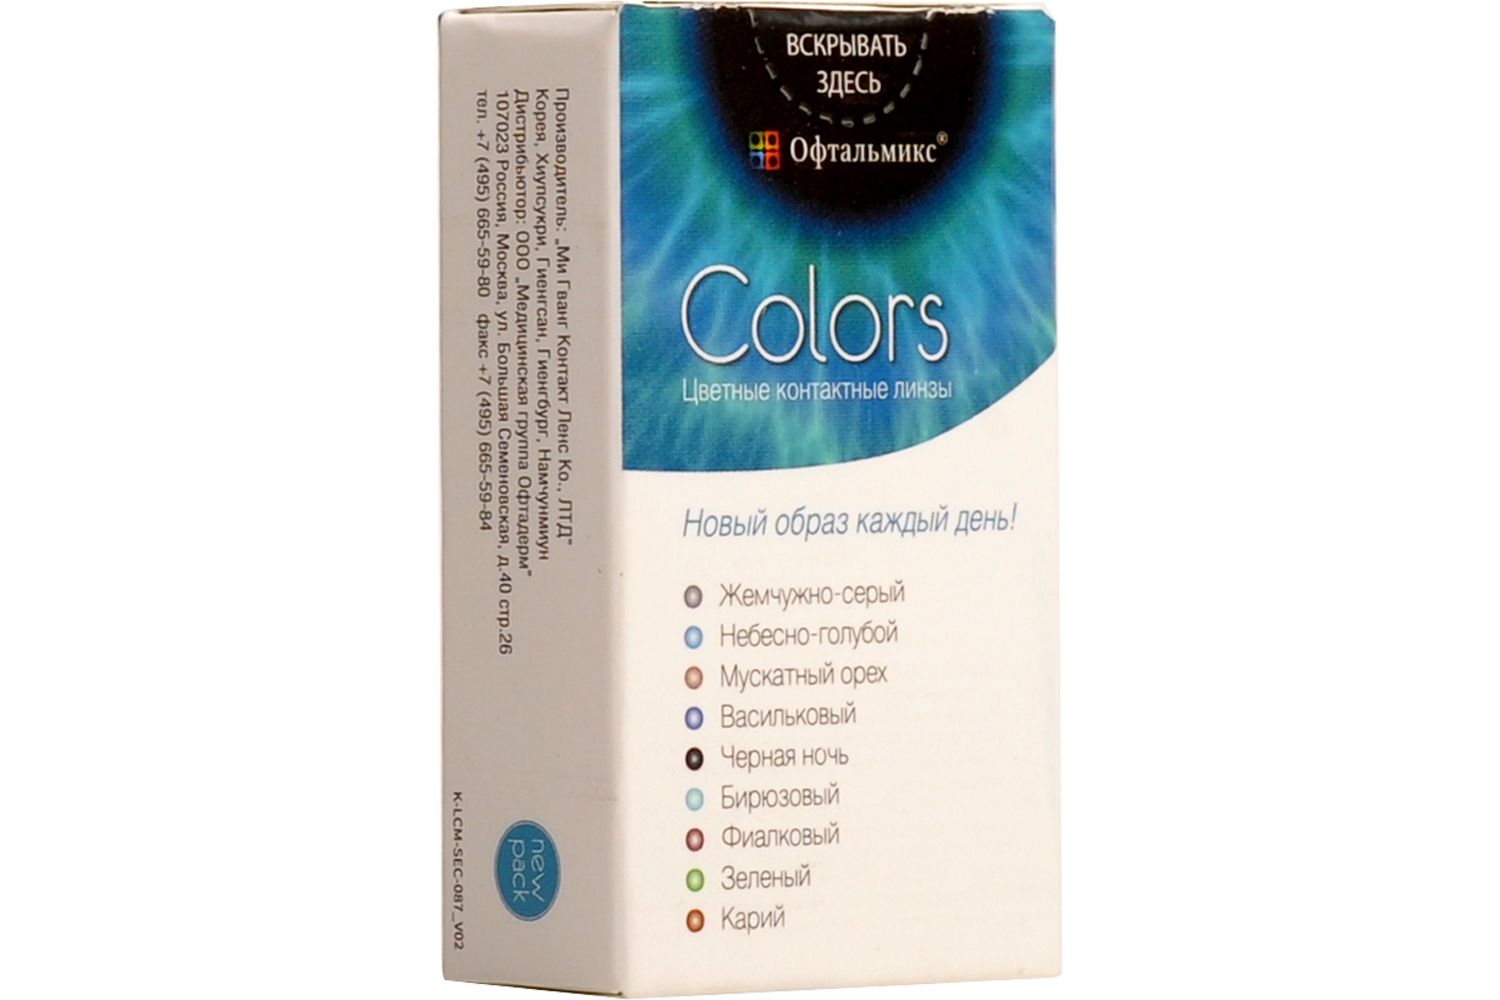 Купить Colors 2 линзы, Цветные контактные линзы Офтальмикс Colors, 2 шт. PWR -5, 50, R 8.6, Olive